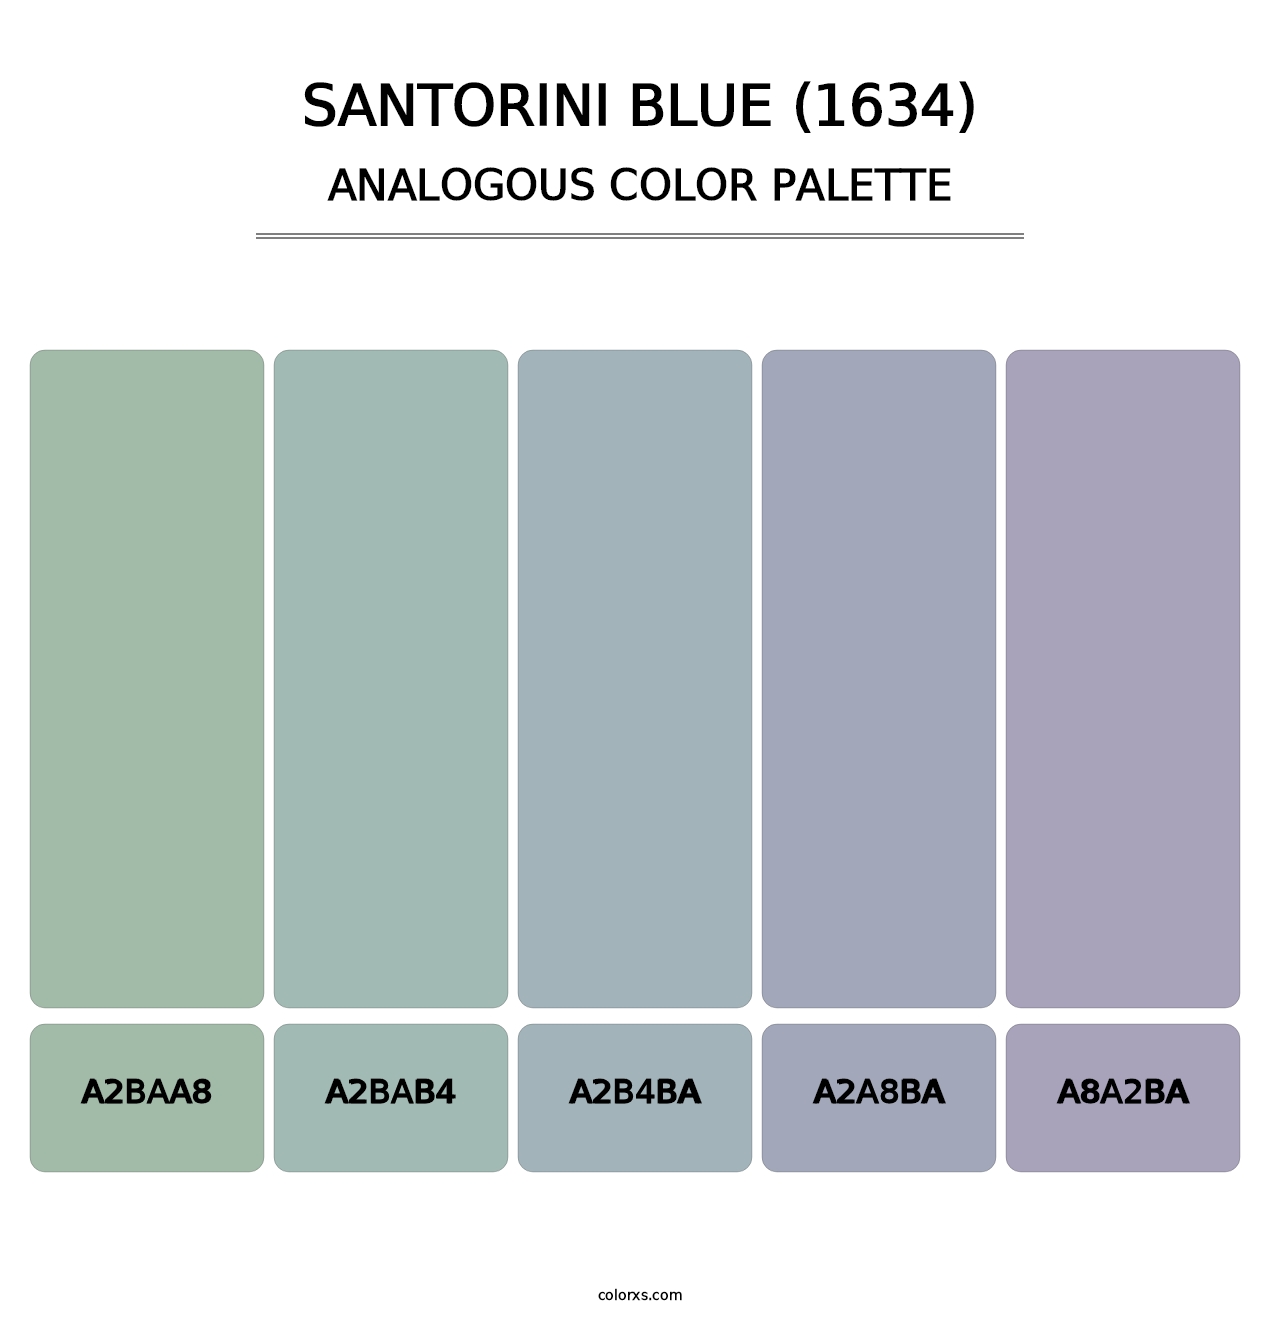 Santorini Blue (1634) - Analogous Color Palette